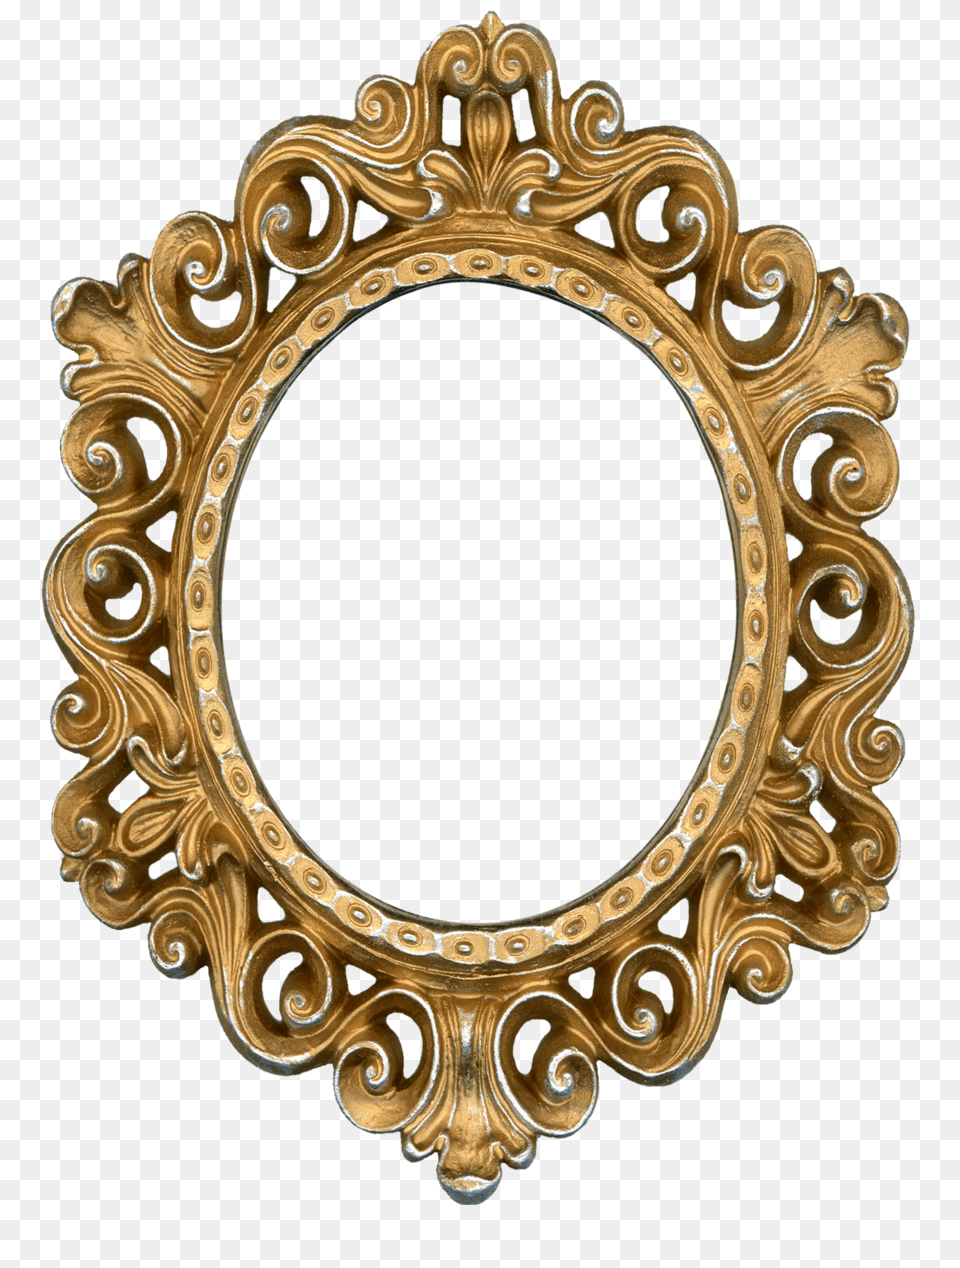 Moldura Para Espelho Show Glass, Oval, Photography, Bronze Png Image